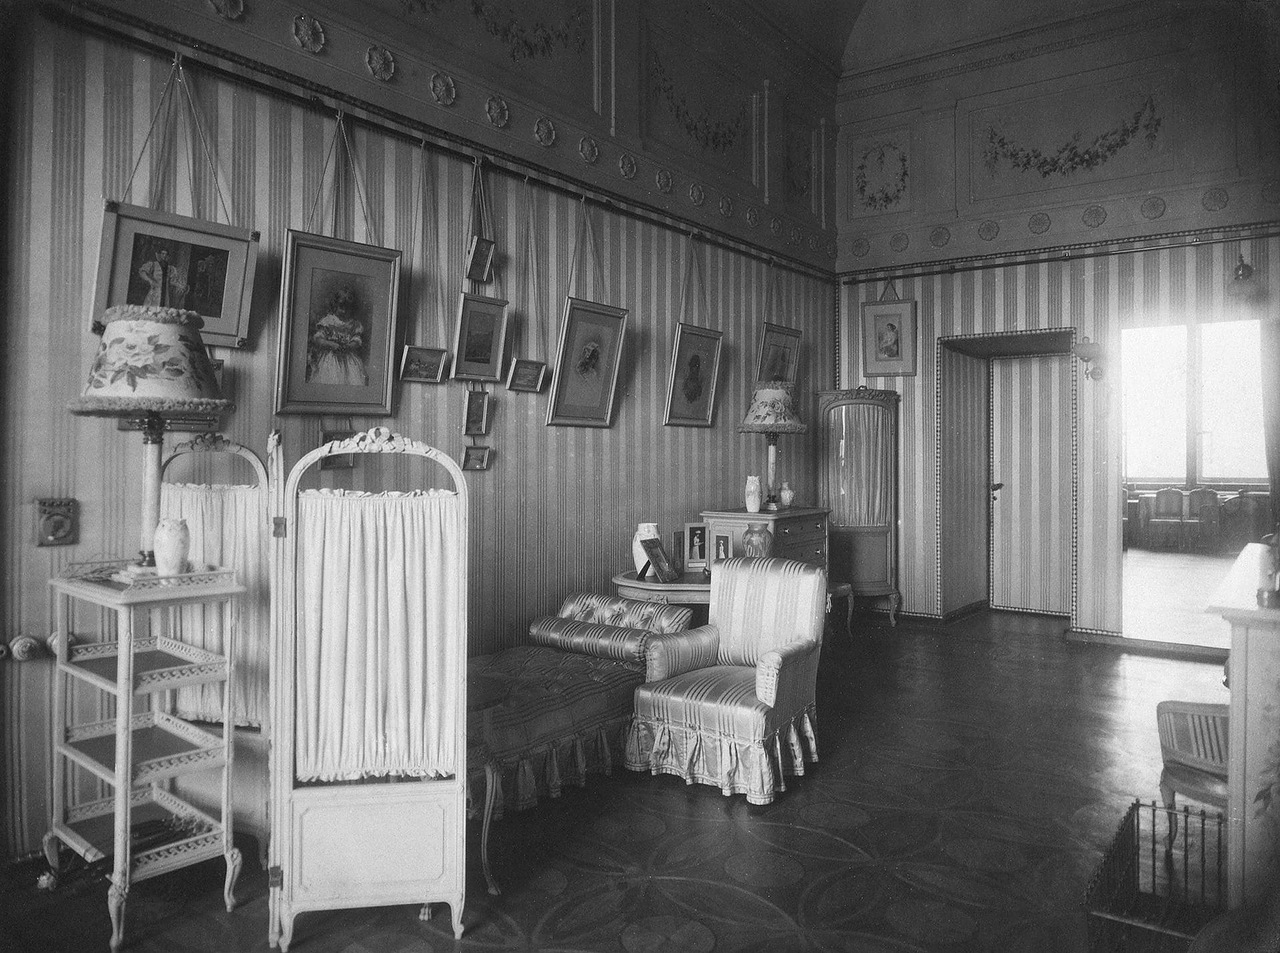 En janvier 1920, le Musée national de la révolution ouvrit ses portes dans le palais d’Hiver. Il partageait le bâtiment avec le musée de l’Ermitage jusqu’en 1941. Actuellement, le palais d’Hiver et le musée de l’Ermitage sont l’une des attractions touristiques les plus populaires au monde. Sur l'image : Chambre à coucher de l’impératrice Alexandra Fiodorovna.